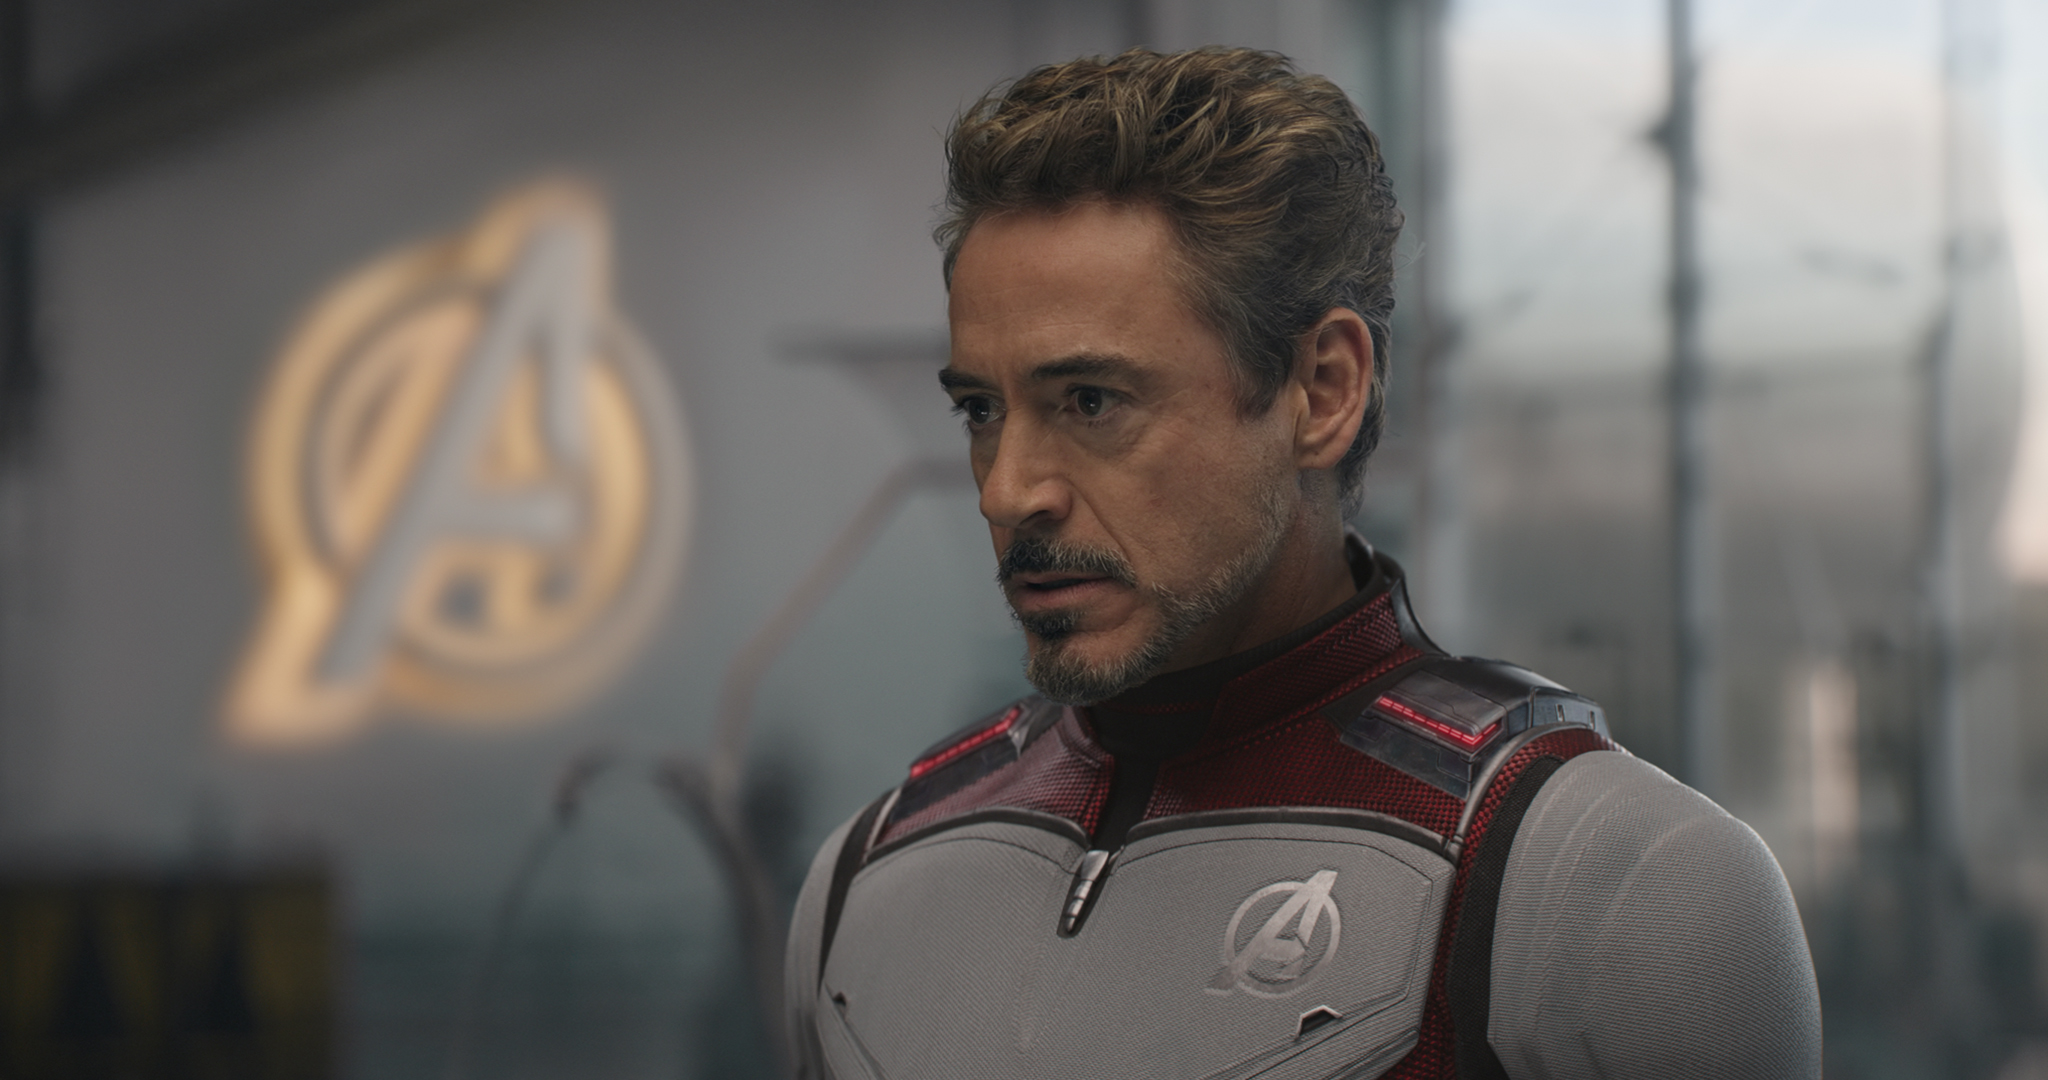 Download mobile wallpaper Iron Man, Robert Downey Jr, Movie, Tony Stark, The Avengers, Avengers Endgame for free.